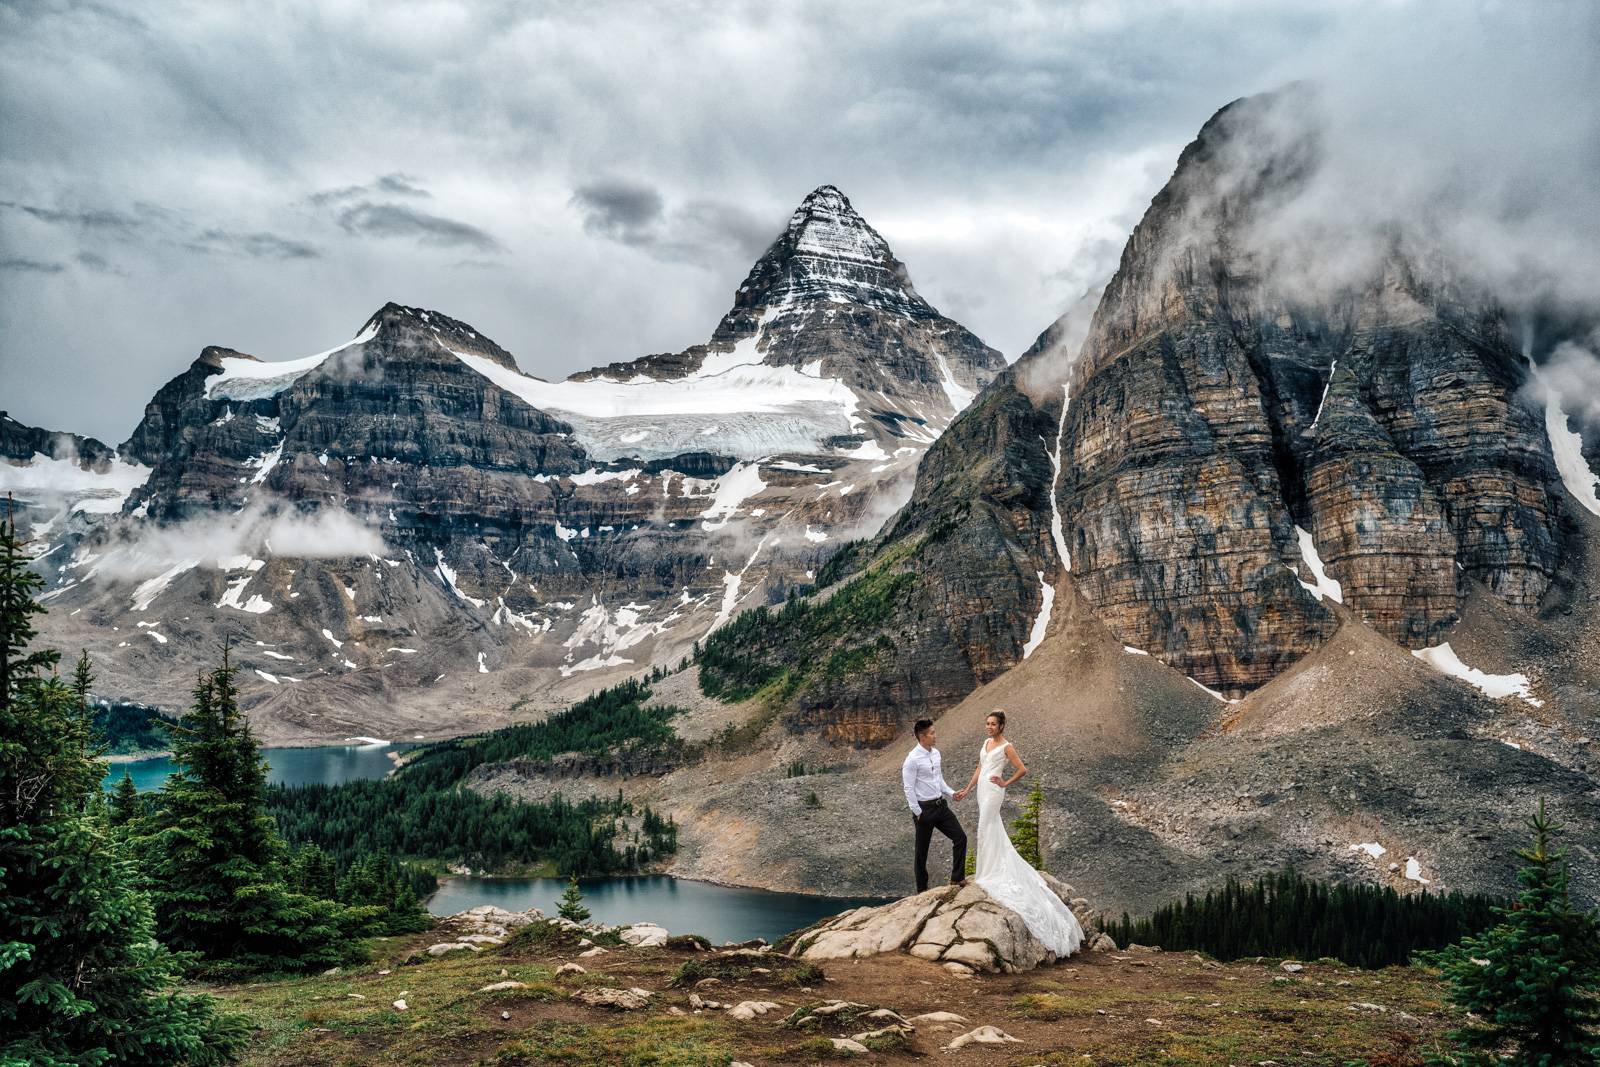 Rocky Mountain elopement